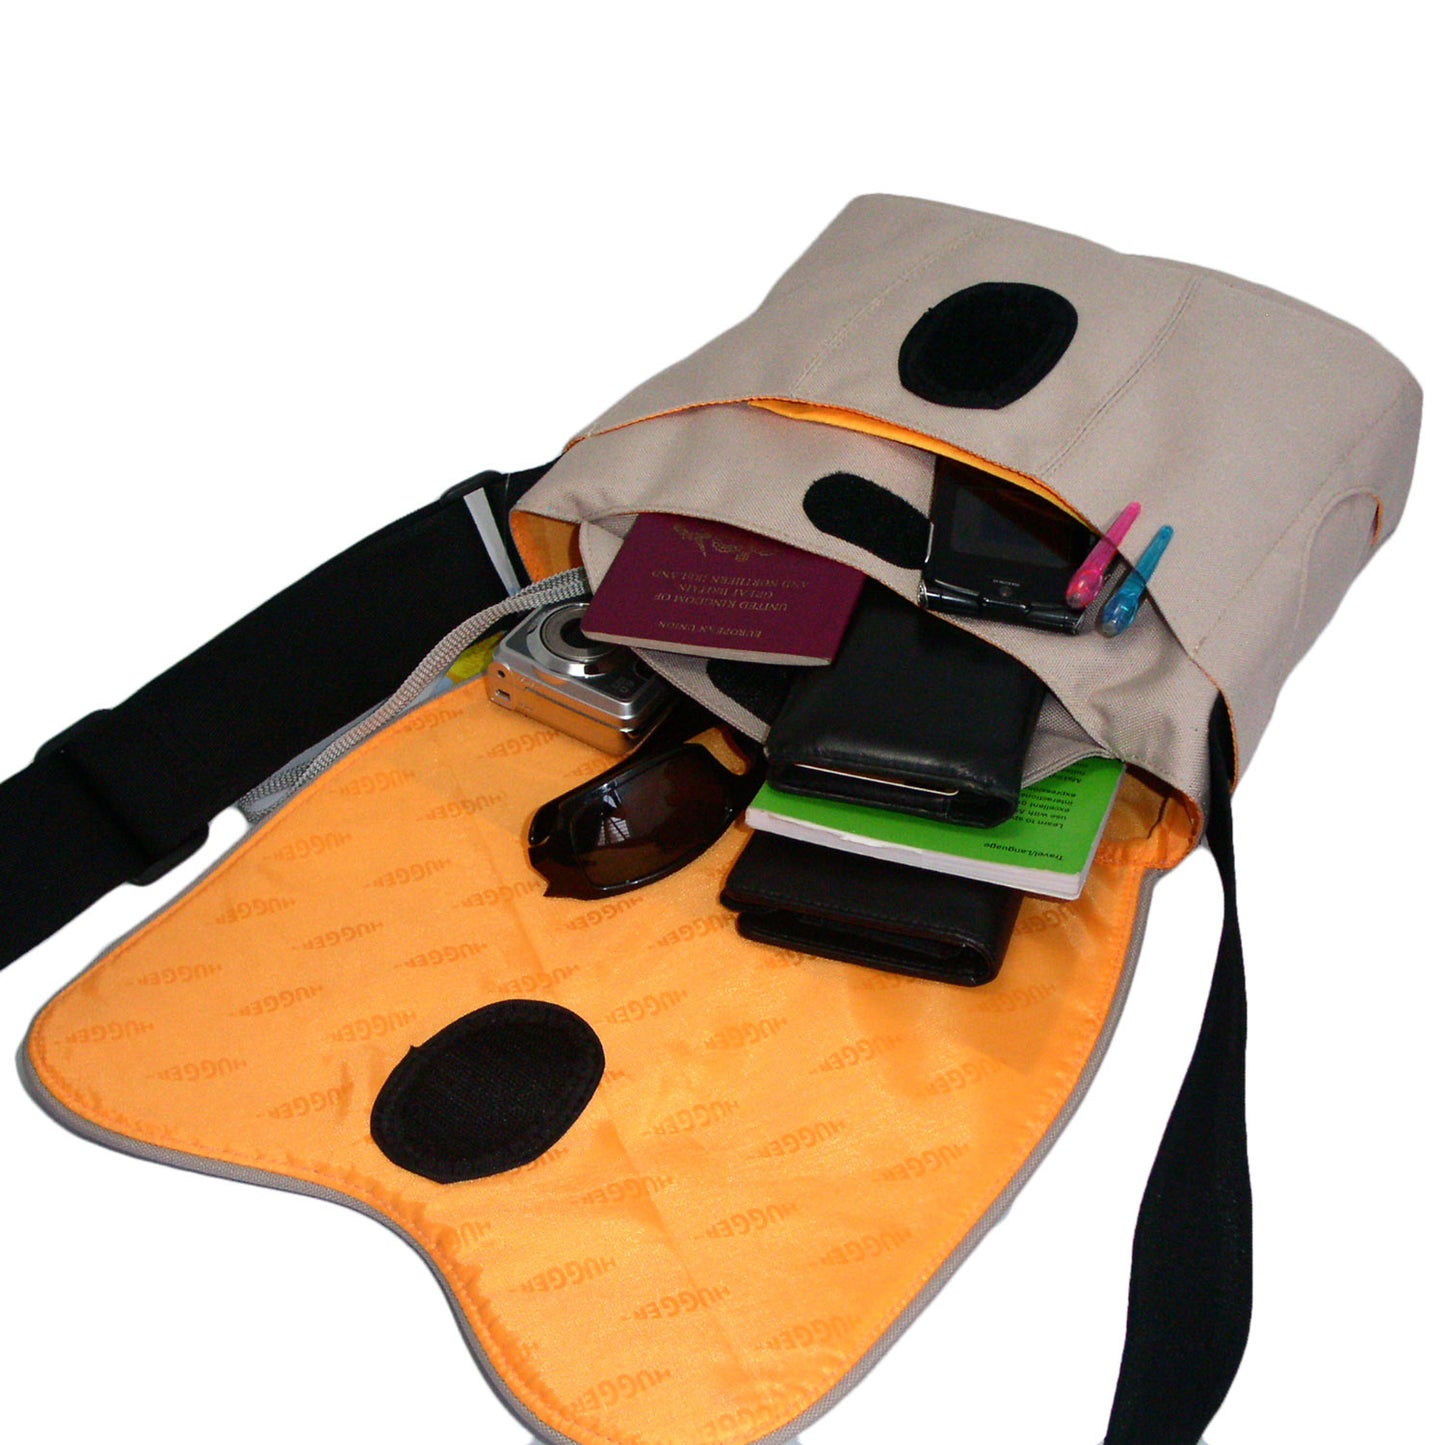 Tasche für 7-Zoll-Geräte wie Tablets, Smartphones, eBook-Reader, Kindle und Zubehör